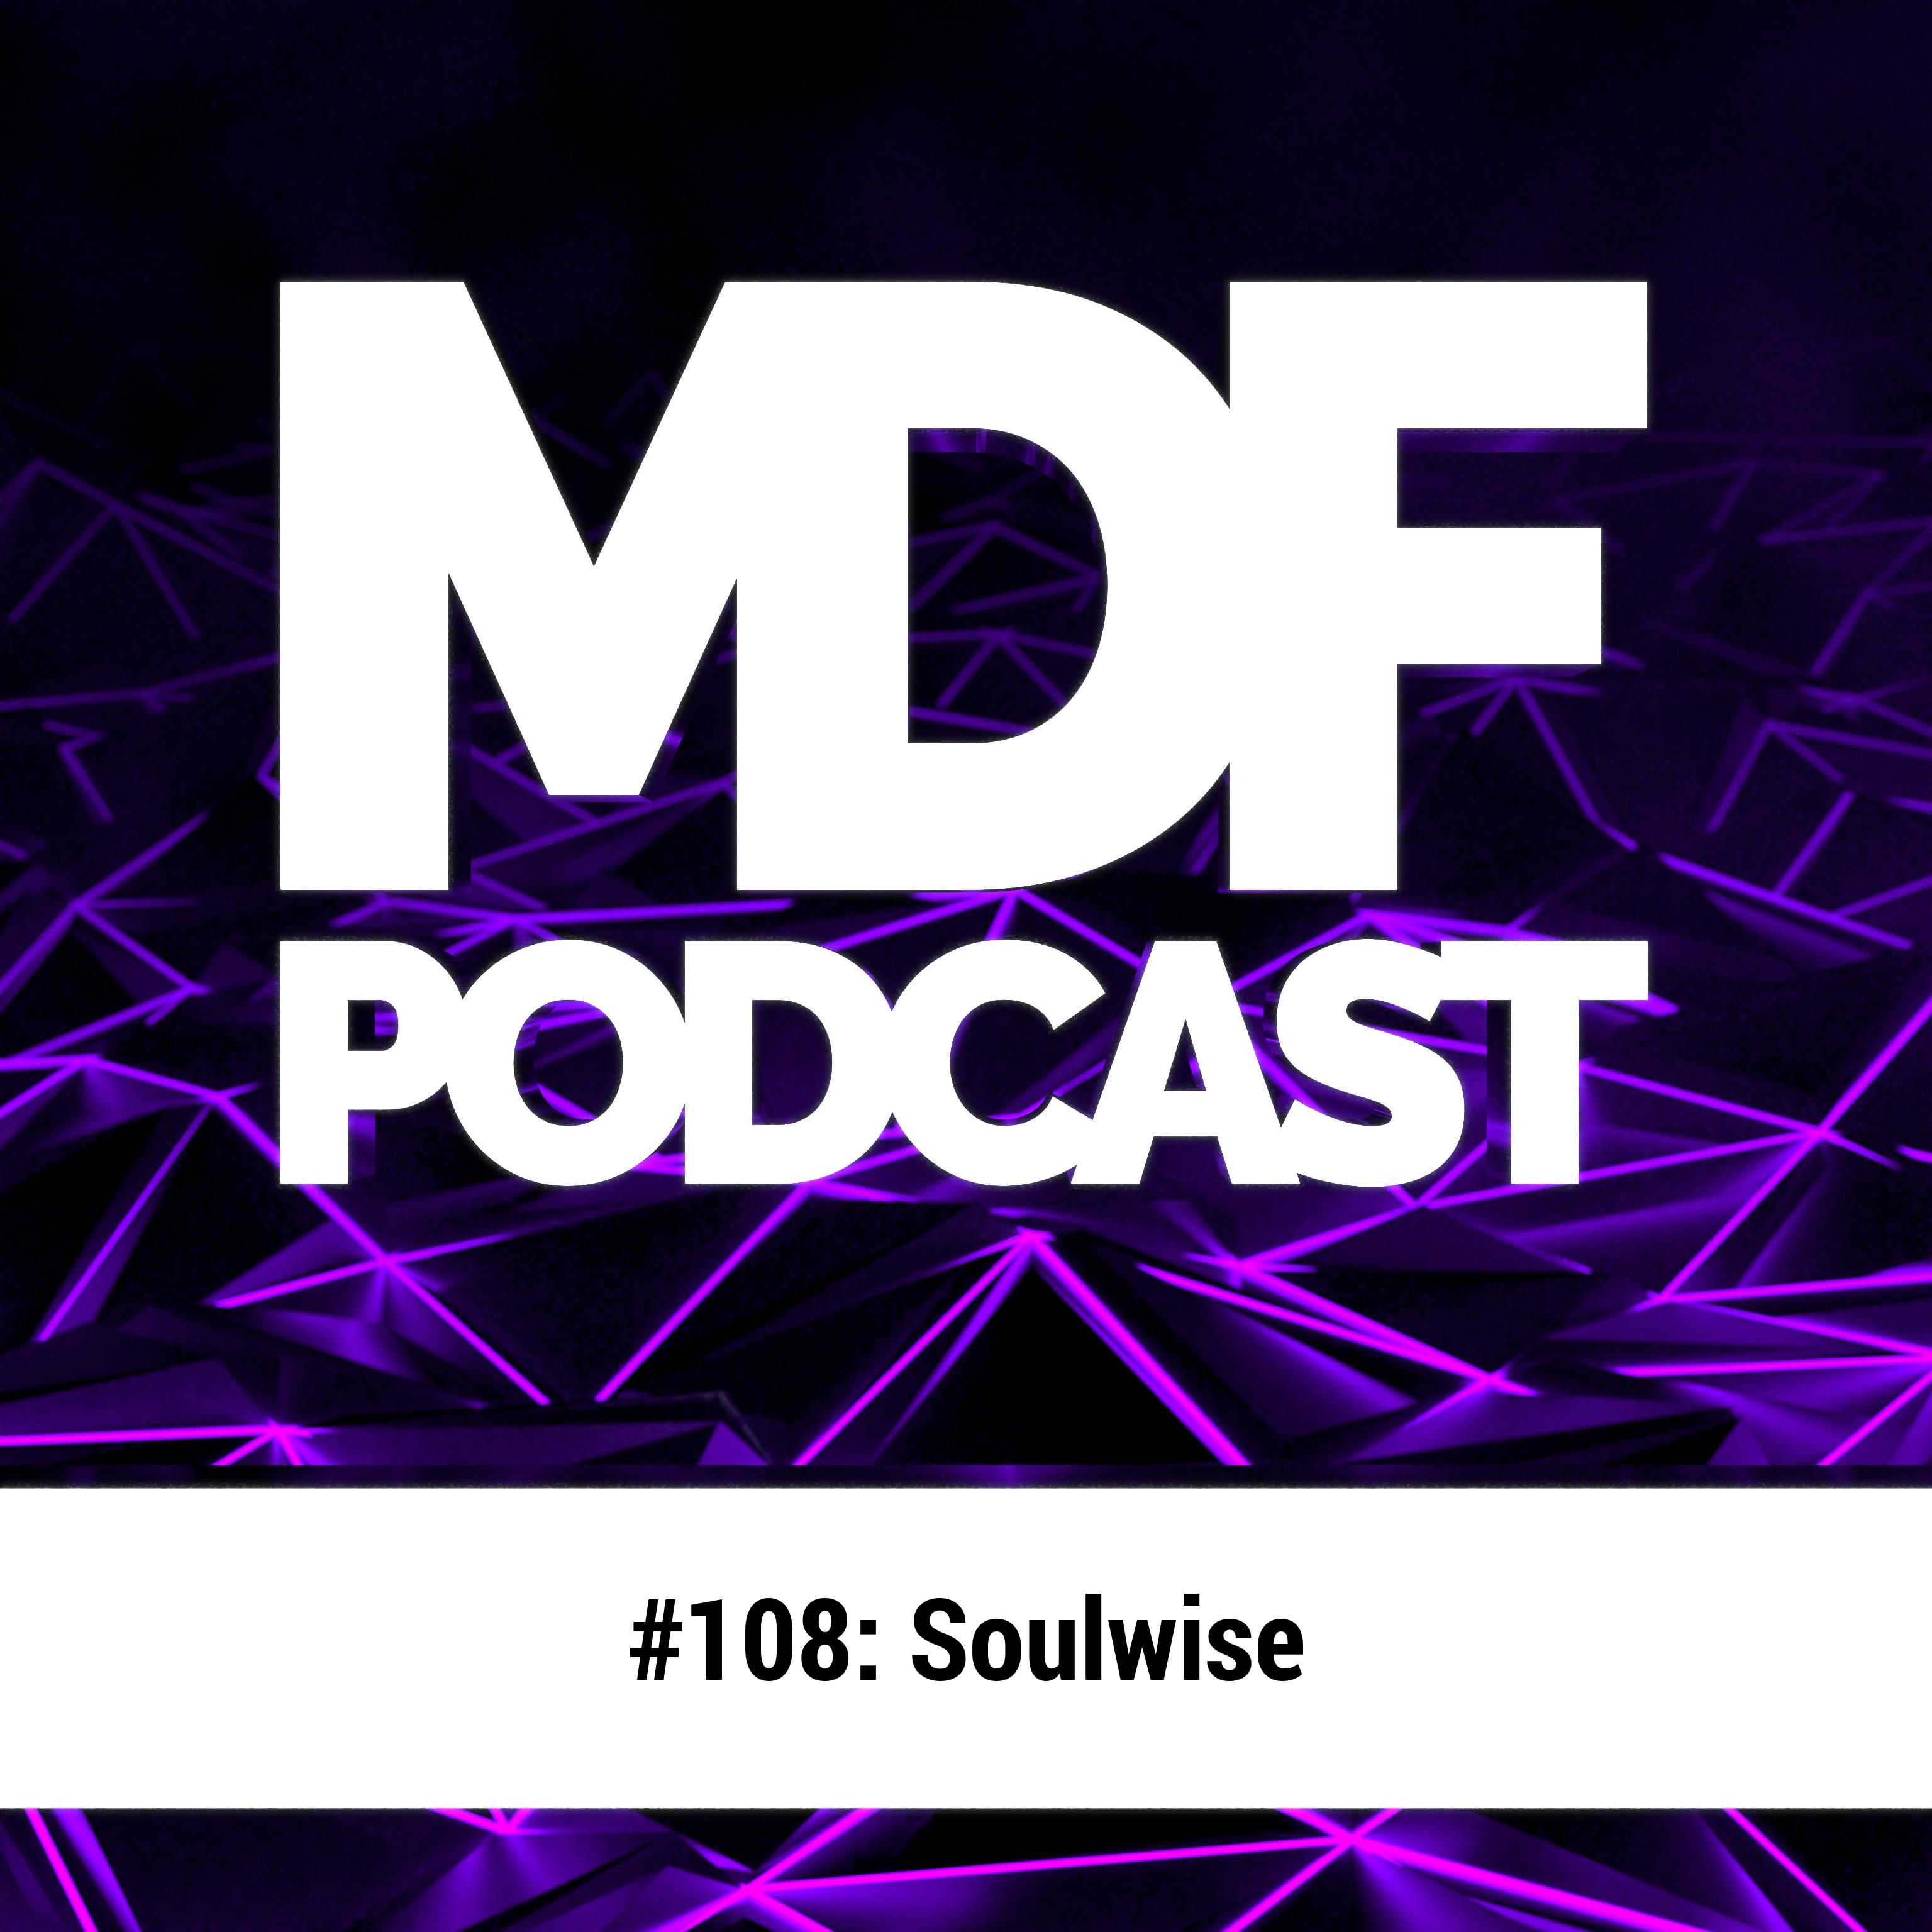 MDF Podcast 1o8